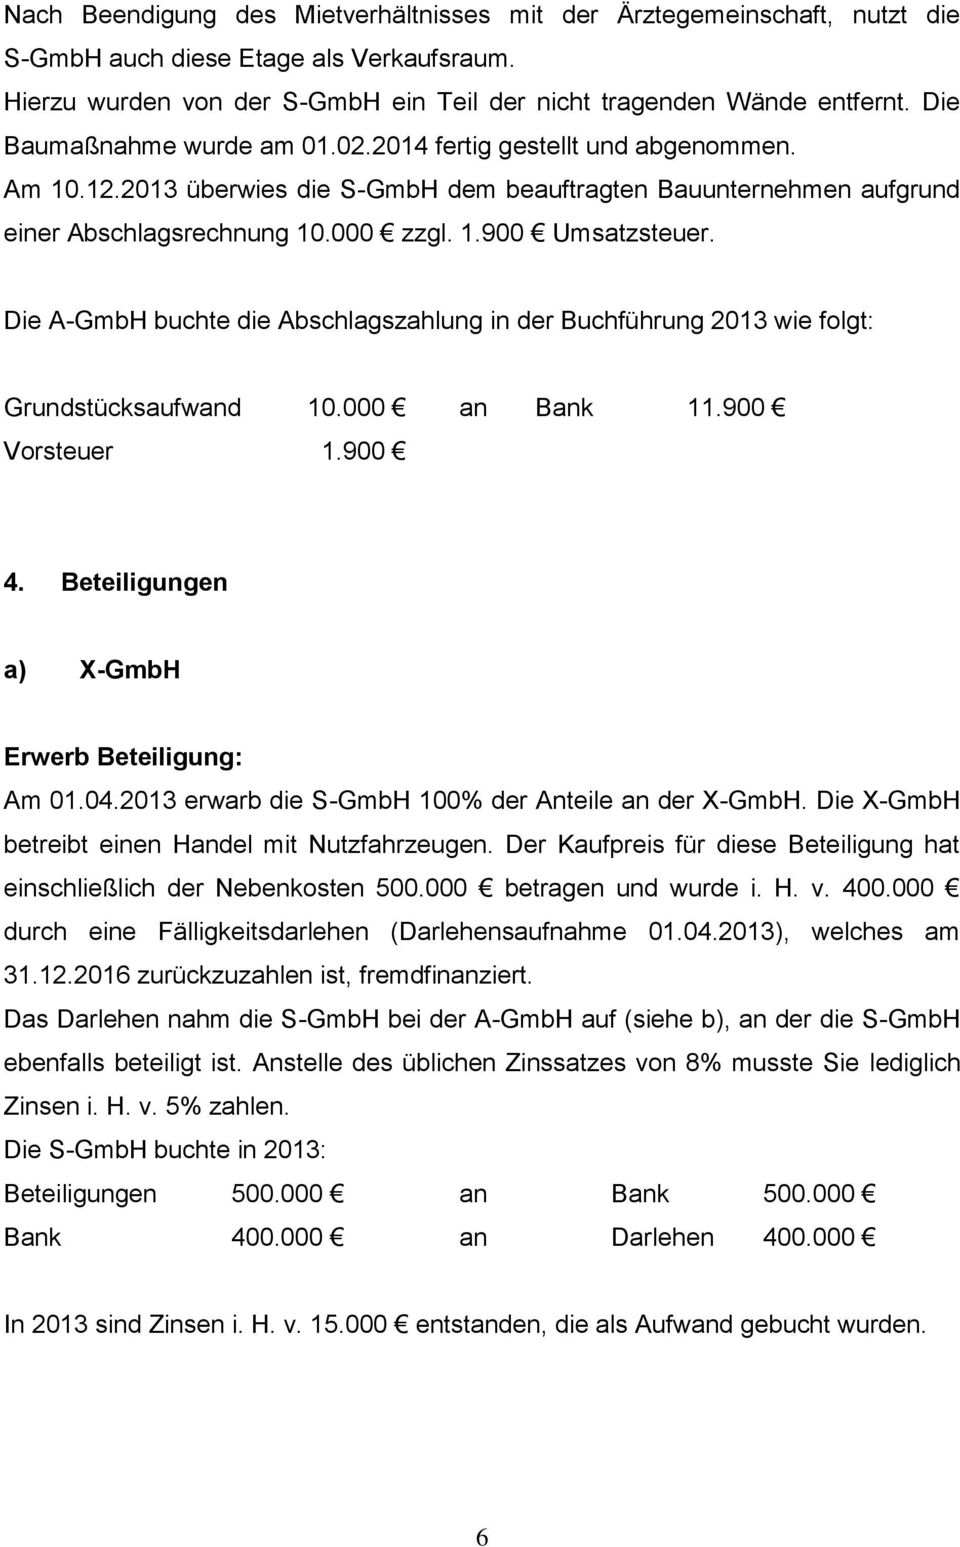 Die A-GmbH buchte die Abschlagszahlung in der Buchführung 2013 wie folgt: Grundstücksaufwand 10.000 an Bank 11.900 Vorsteuer 1.900 4. Beteiligungen a) X-GmbH Erwerb Beteiligung: Am 01.04.